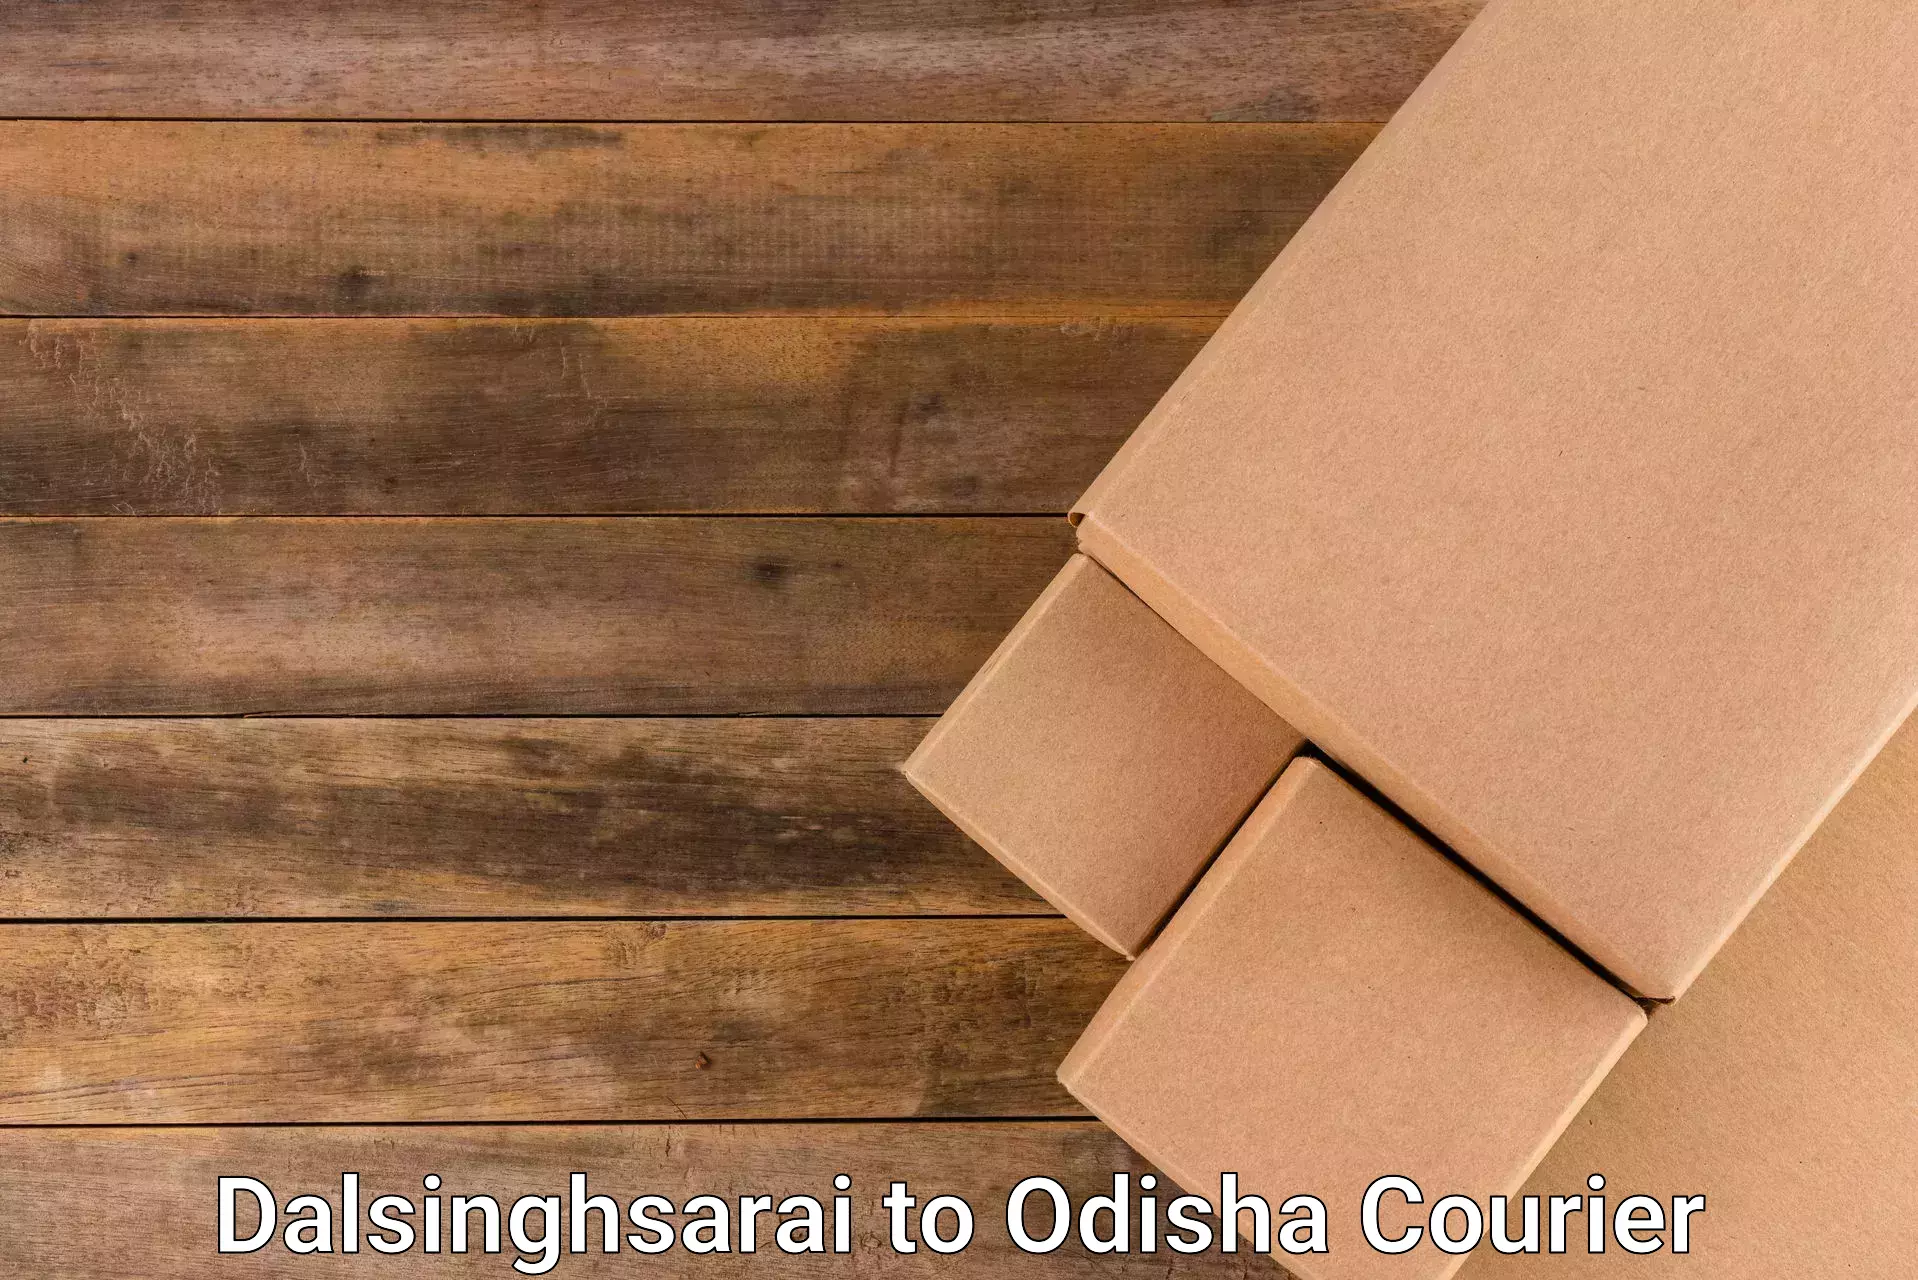 End-to-end delivery Dalsinghsarai to Udayagiri Kandhamal